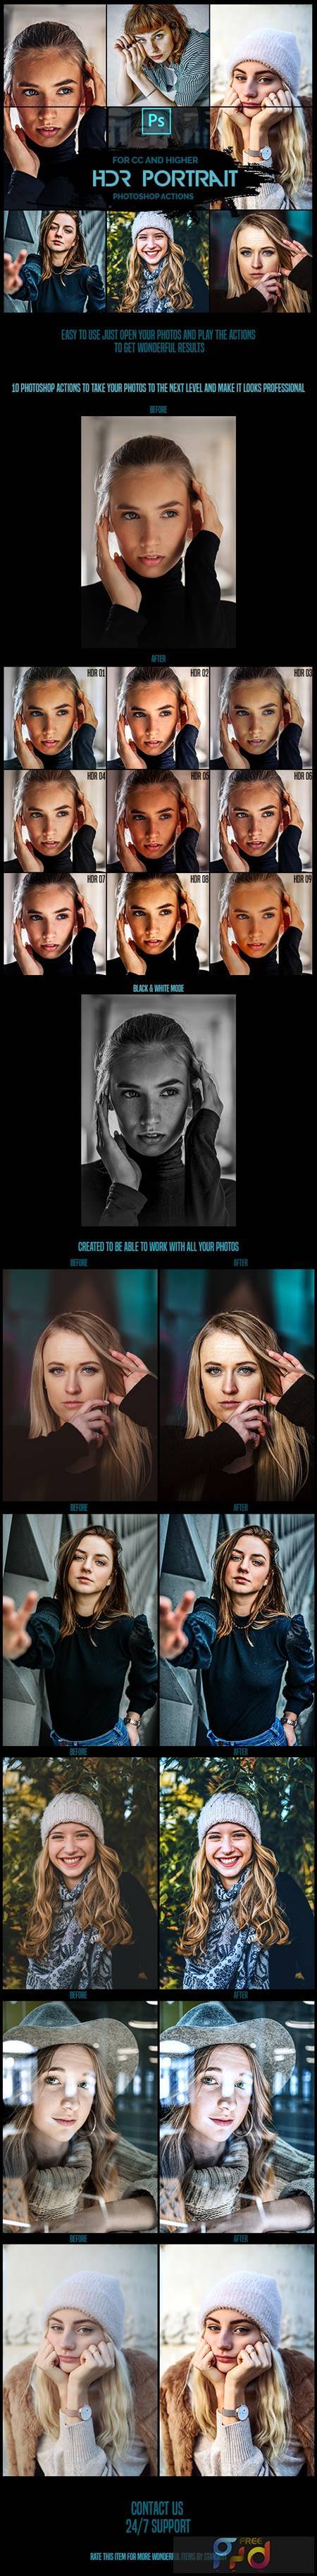 HDR Portrait - 10 Premium Photoshop Actions 26106614 1